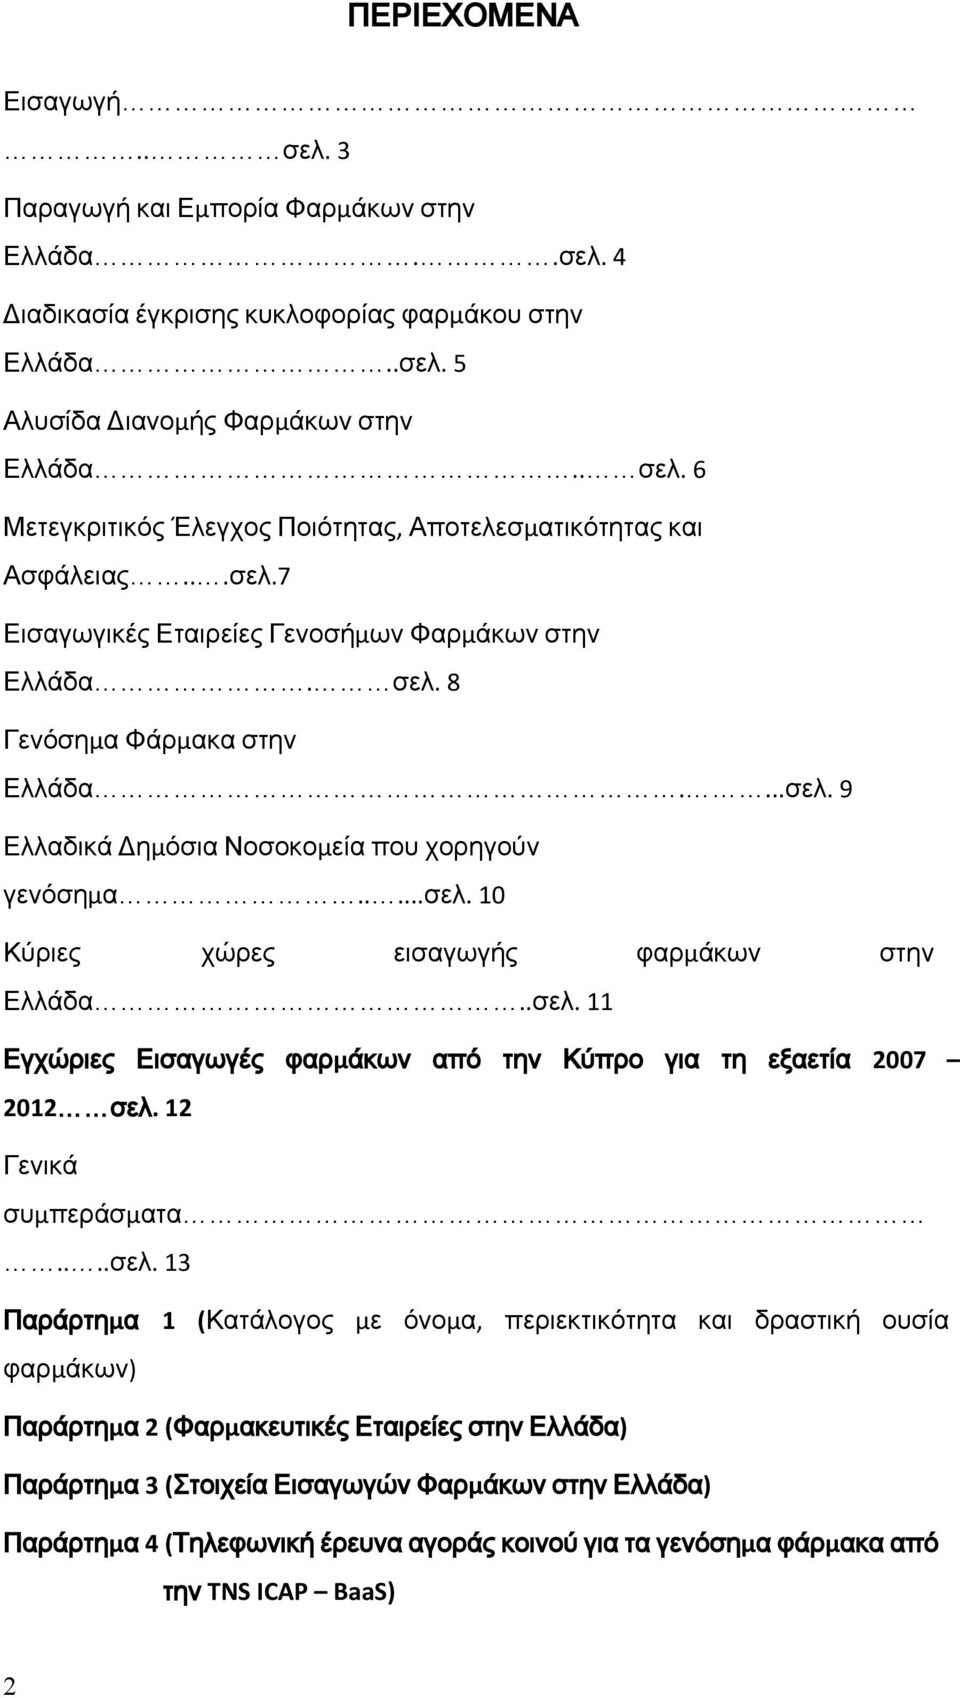 .σελ. 11 Εγχώριες Εισαγωγές φαρμάκων από την Κύπρο για τη εξαετία 2007 2012 σελ. 12 Γενικά συμπεράσματα....σελ. 13 Παράρτημα 1 (Κατάλογος με όνομα, περιεκτικότητα και δραστική ουσία φαρμάκων)